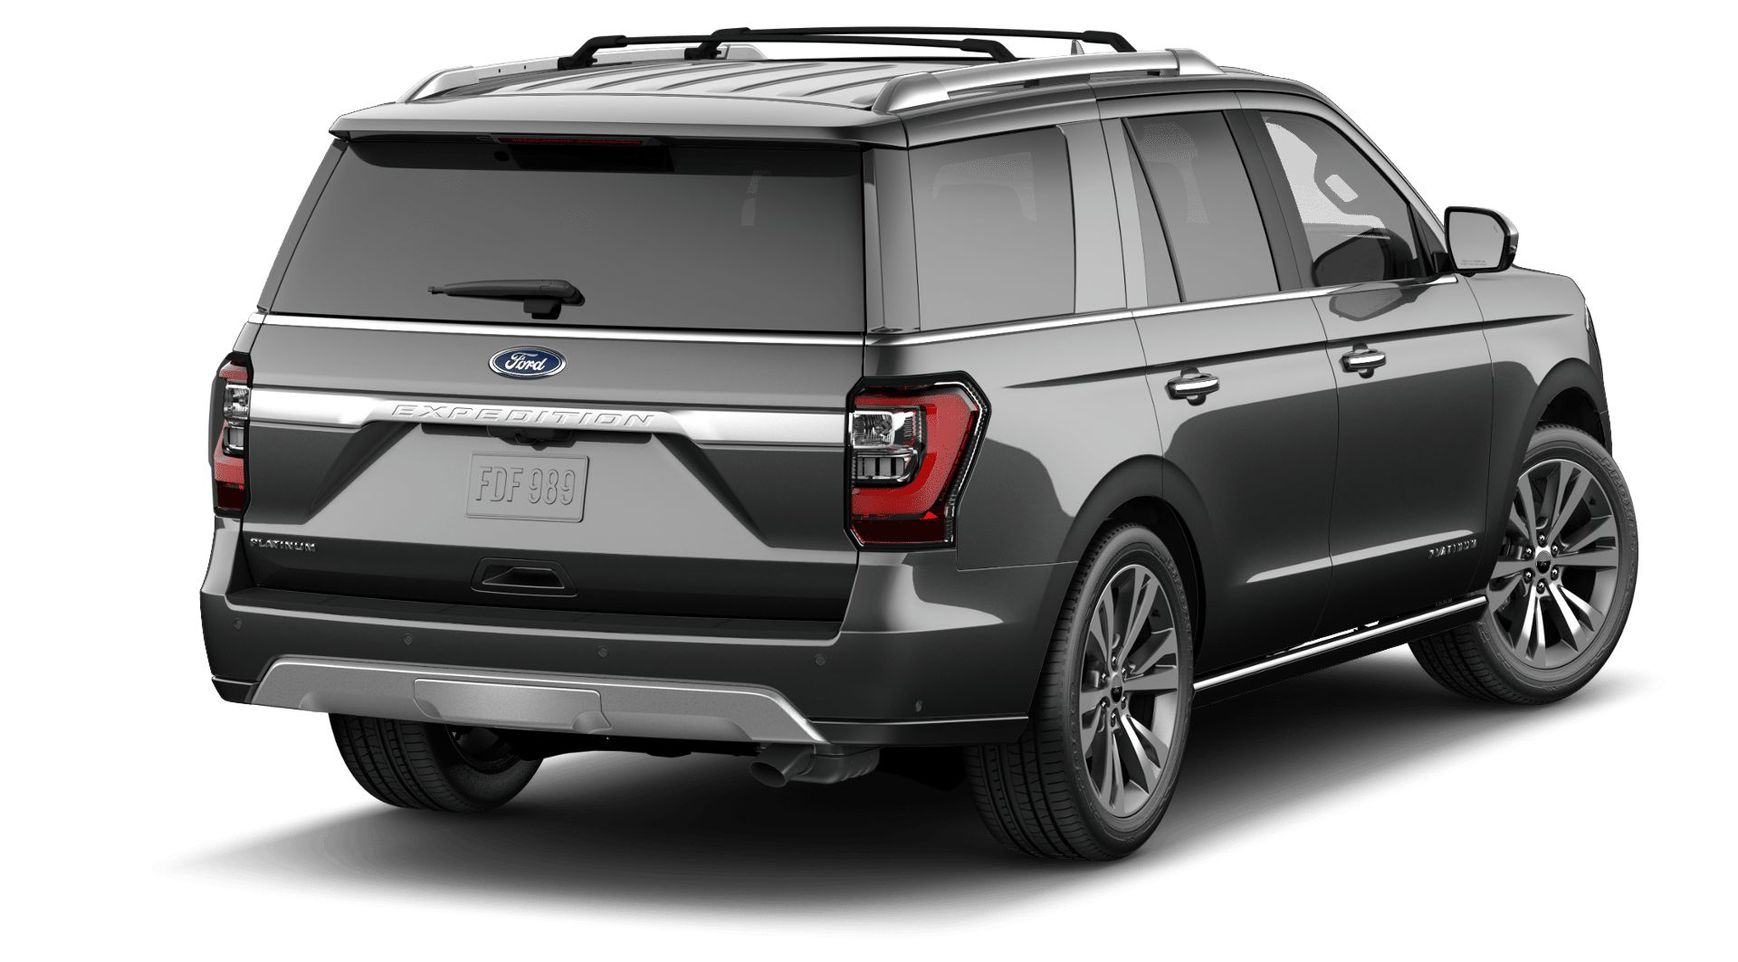 Ford Expedition Platinum 2020 3.5 V6 EcoBoost® Forced Бензин 10 ст АКПП Полный  